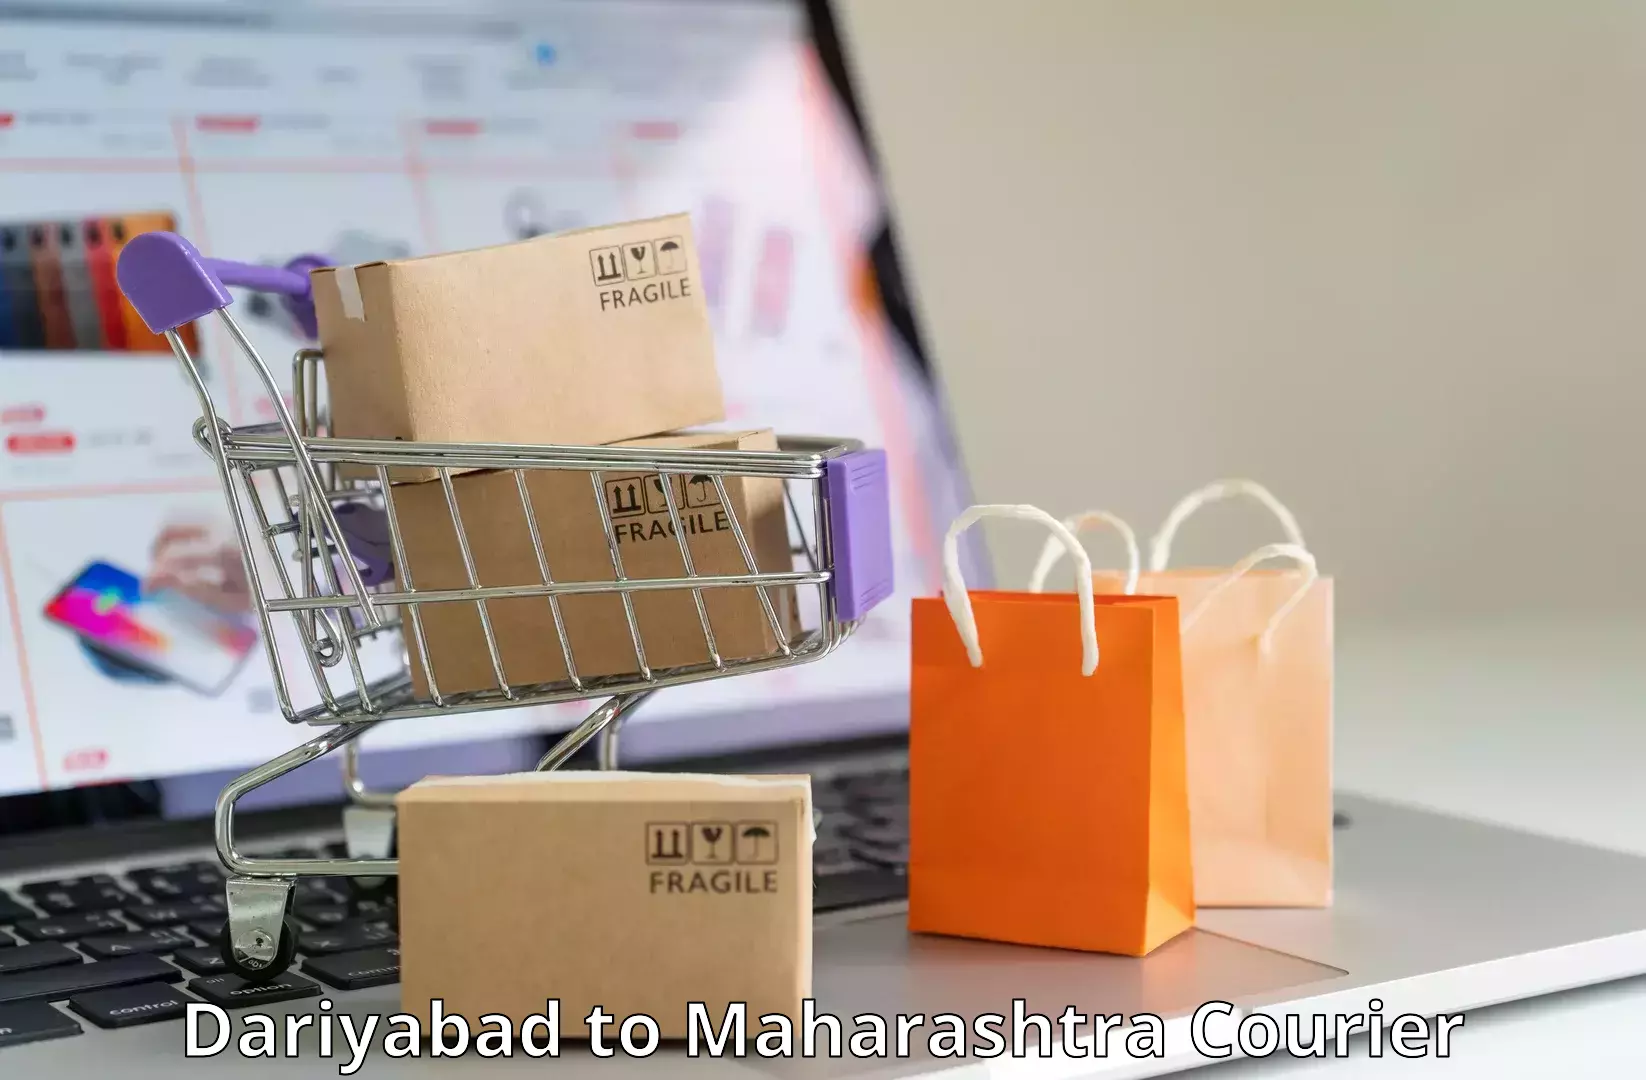 Customer-centric shipping in Dariyabad to Shrirampur